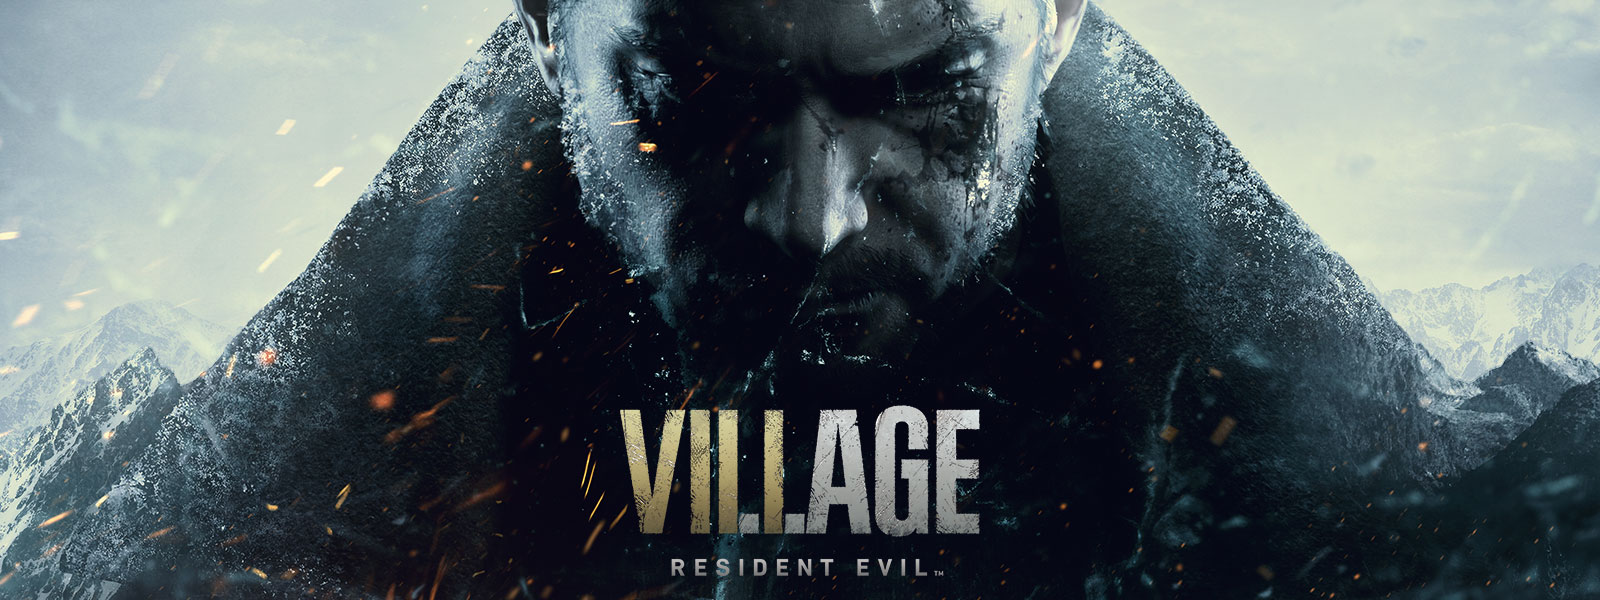 Resident Evil Village, zachmuřená tvář Chrise Redfielda, stylizovaná jako úbočí hory